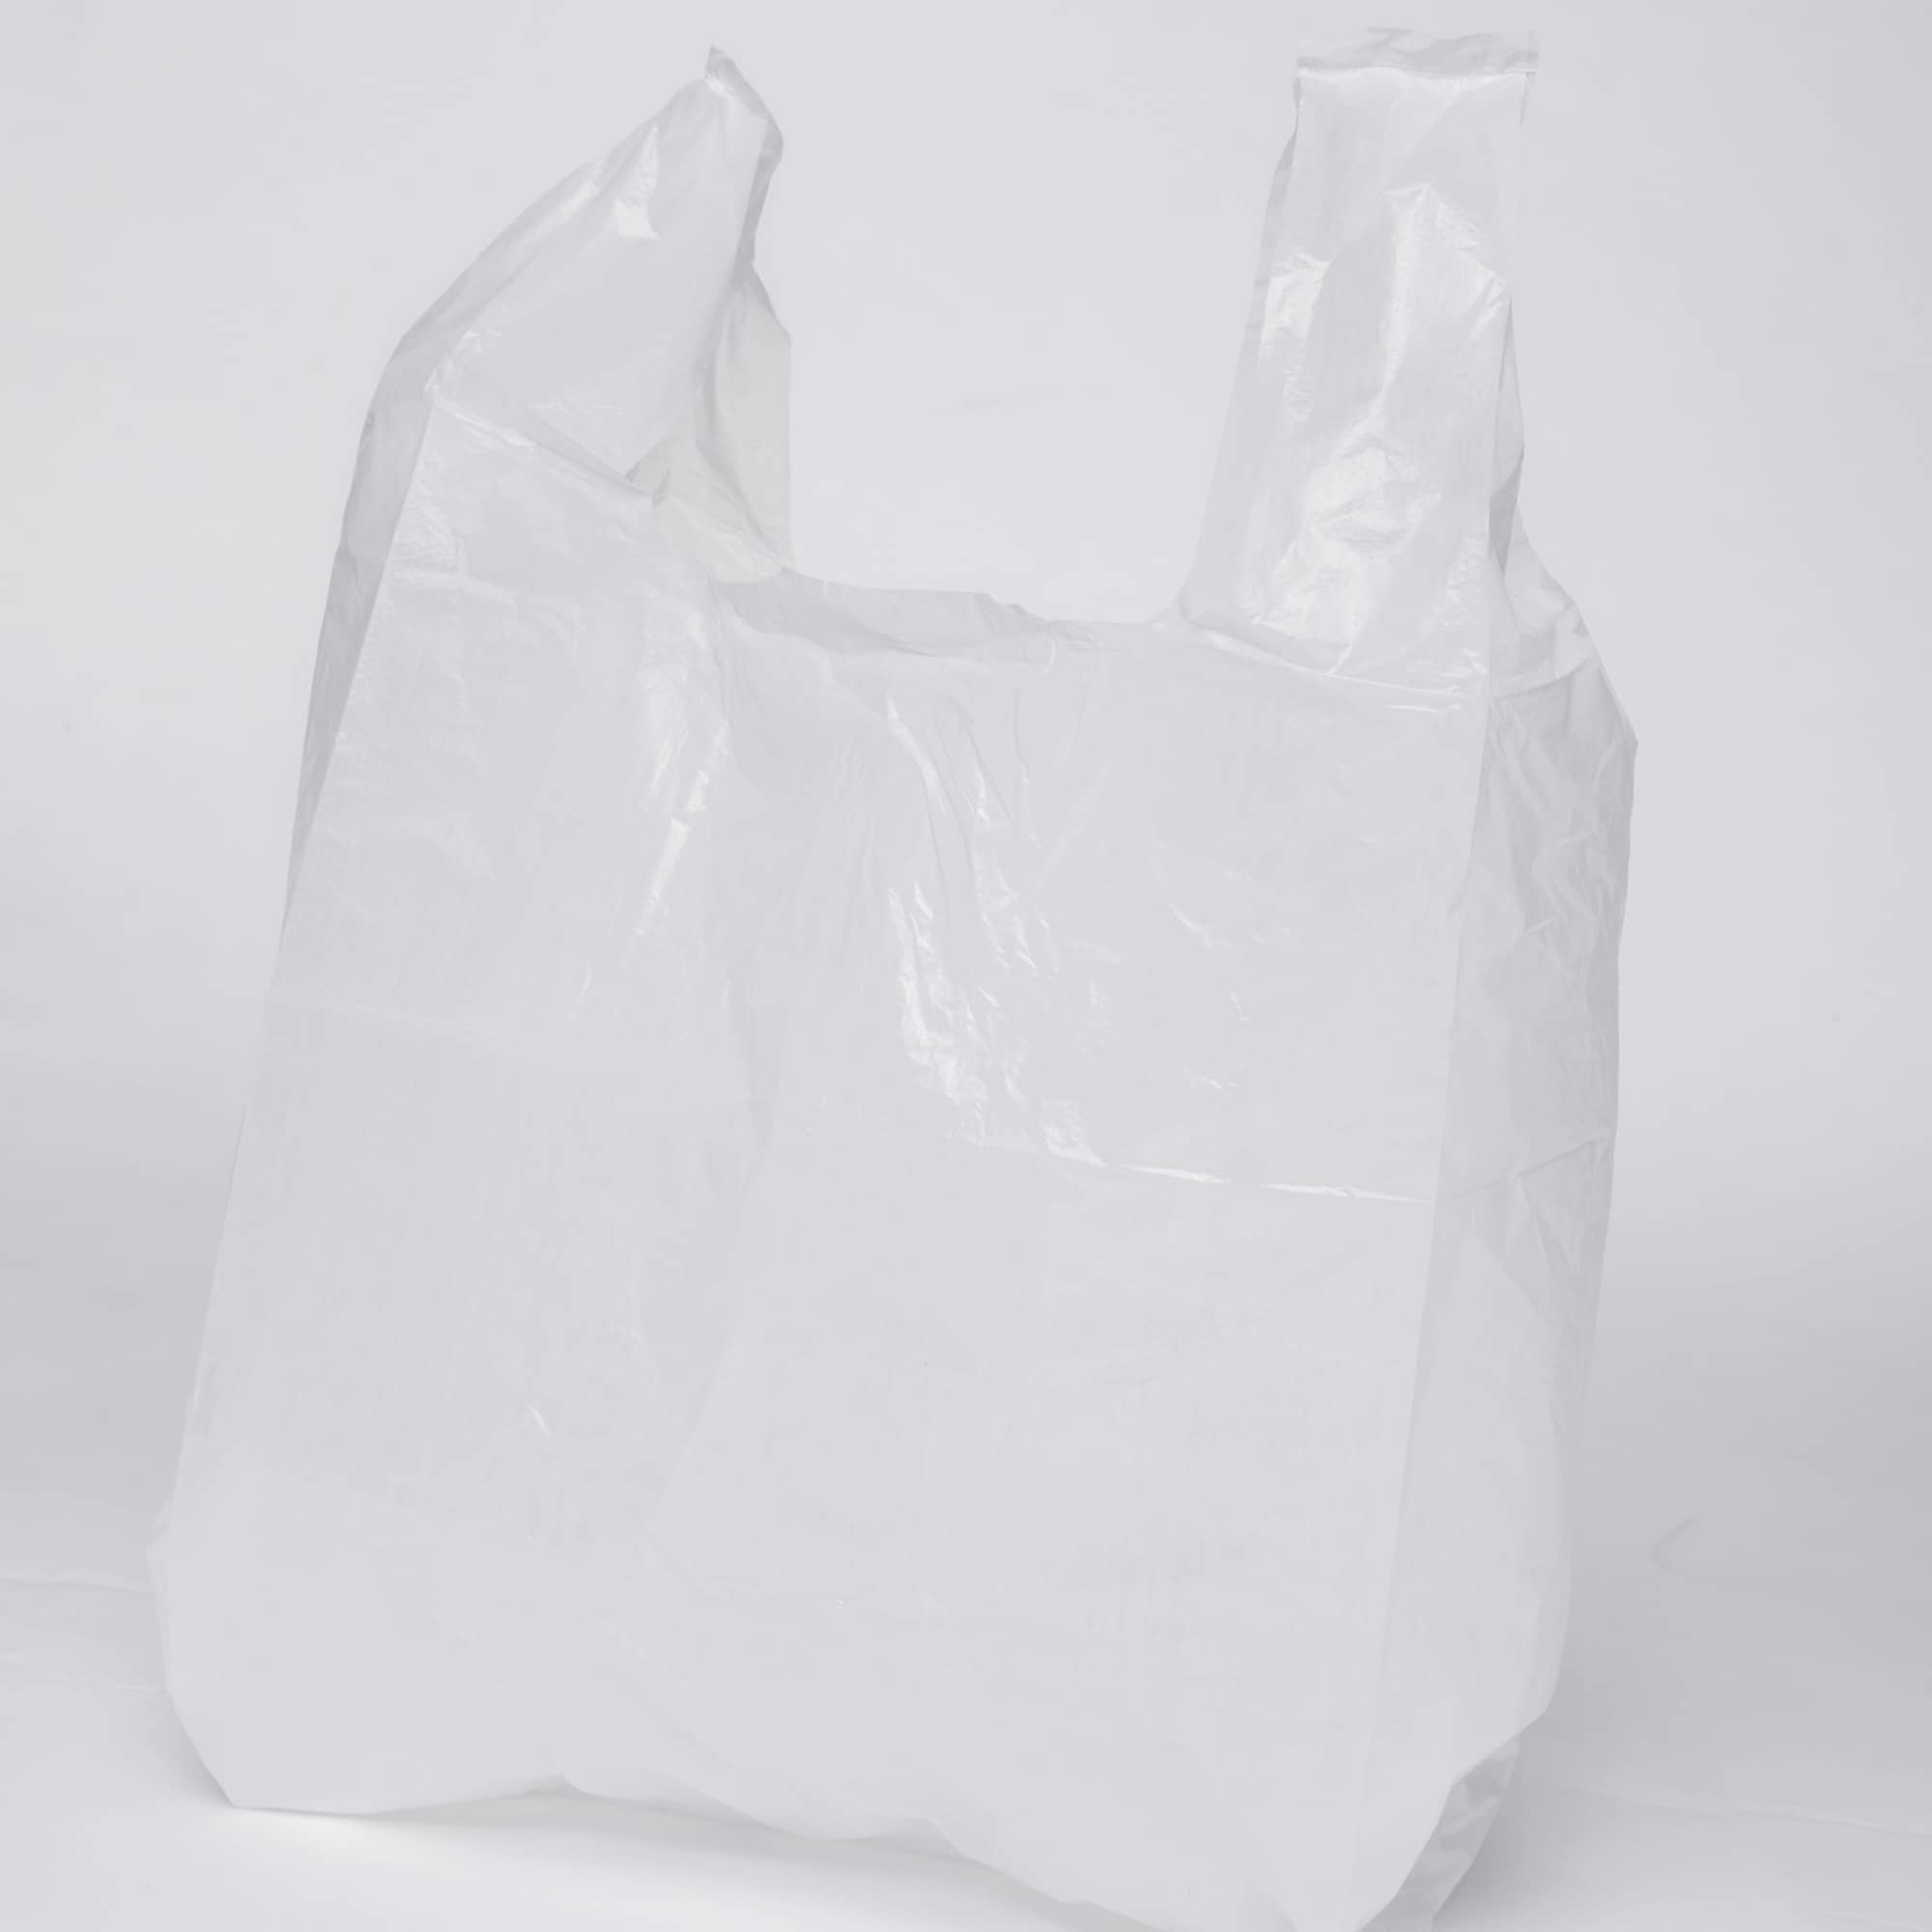 Plastikbeutel weiß / transparent Enpack Hemdchen-Tragetaschen aus HDPE 1000 Stück 45cm x 12cm x 25cm Einkaufstüten 21 my Gemüsetüten Kunststoff Tüten Plastiktragetaschen 